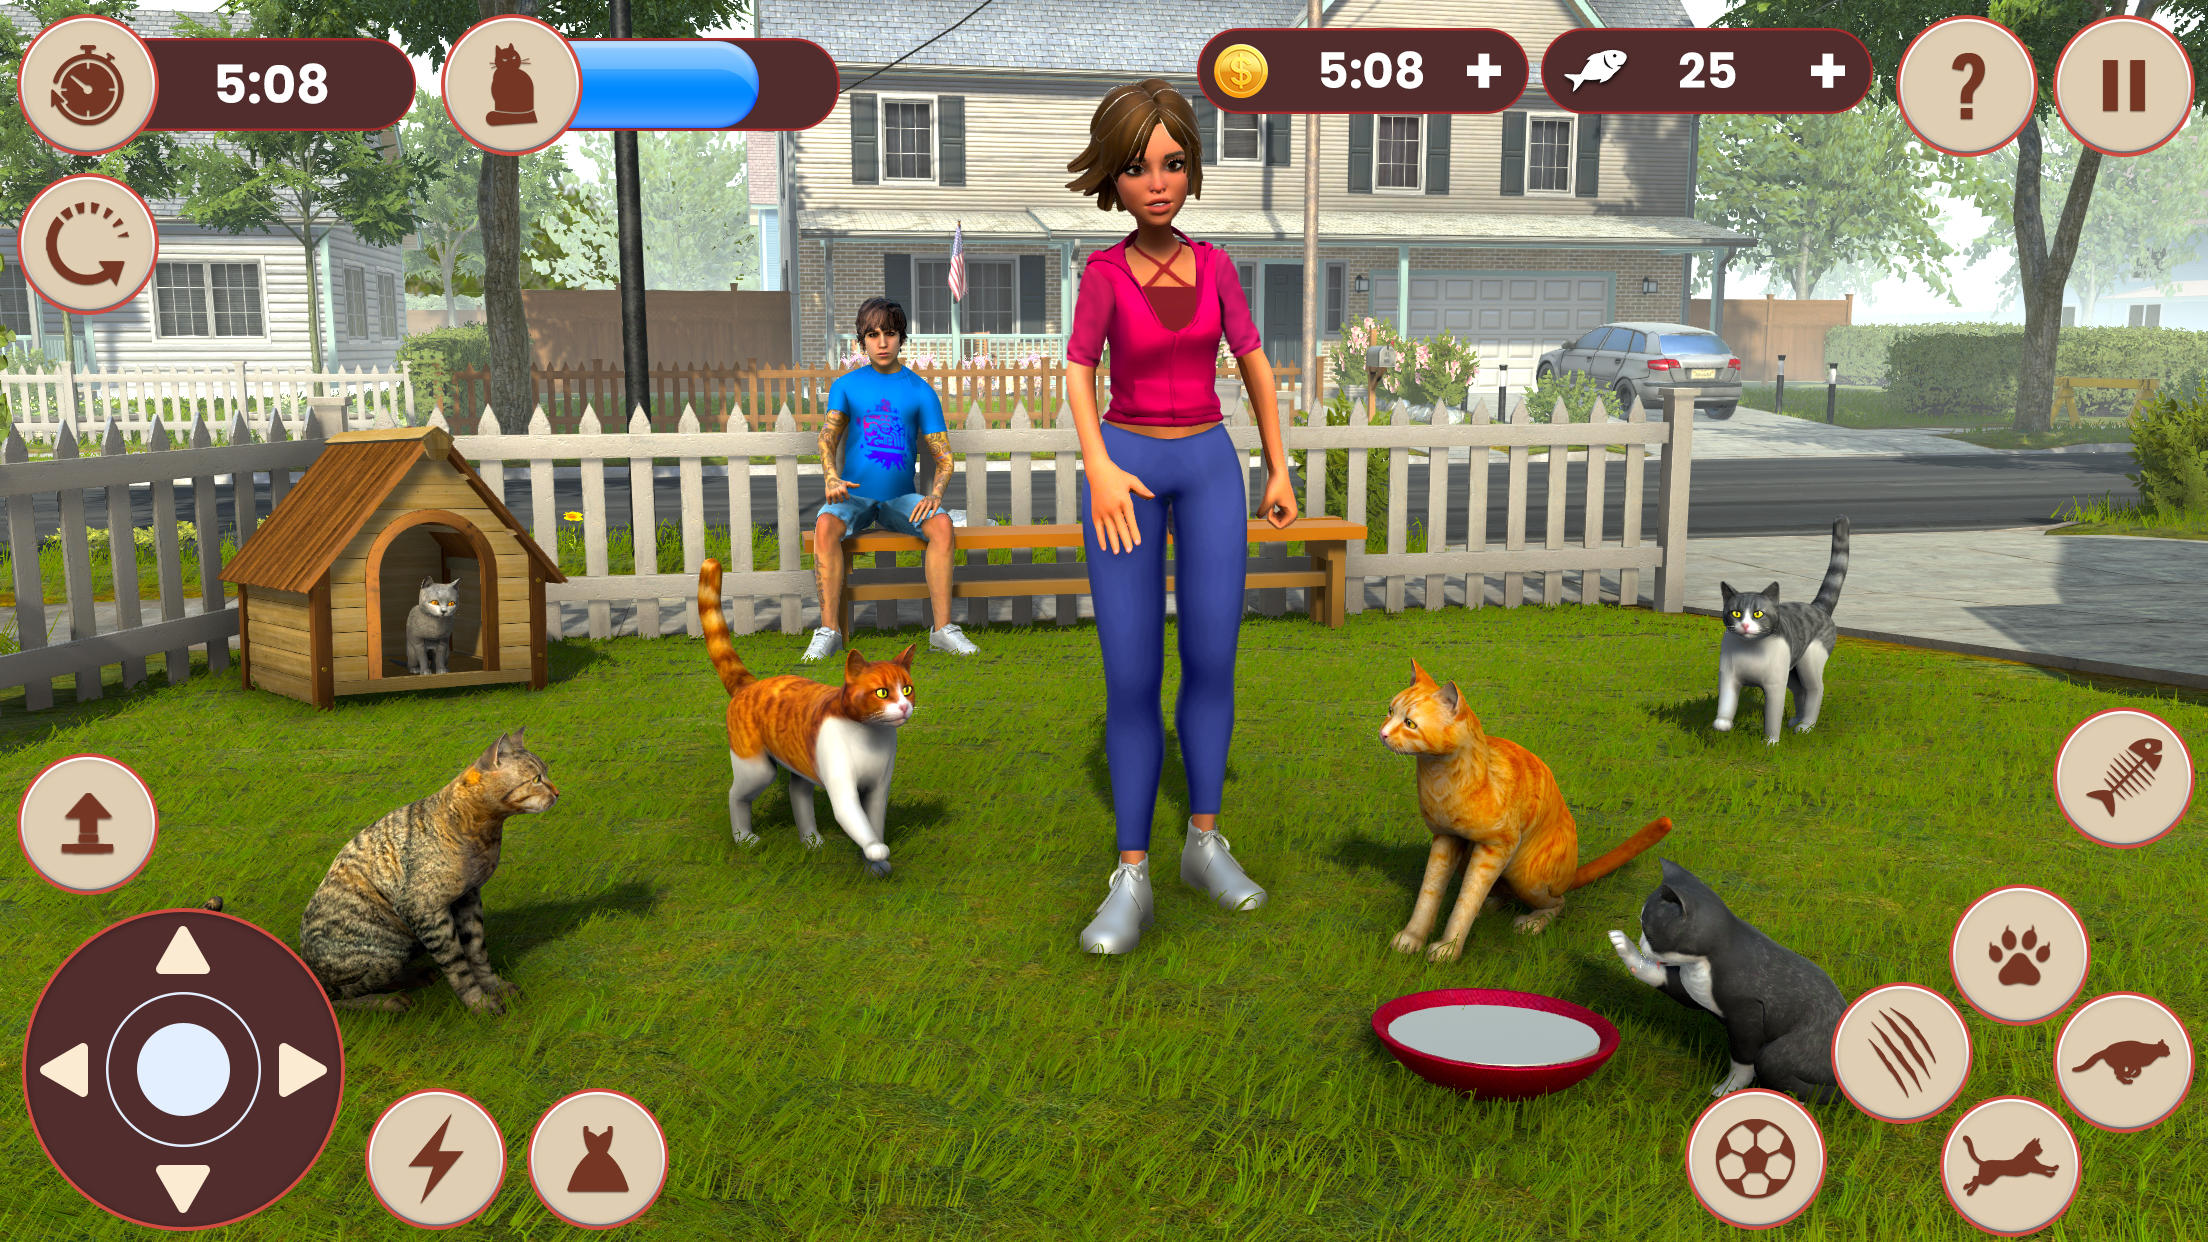 Download do APK de Jogo de Gatos Simulador Gratis para Android